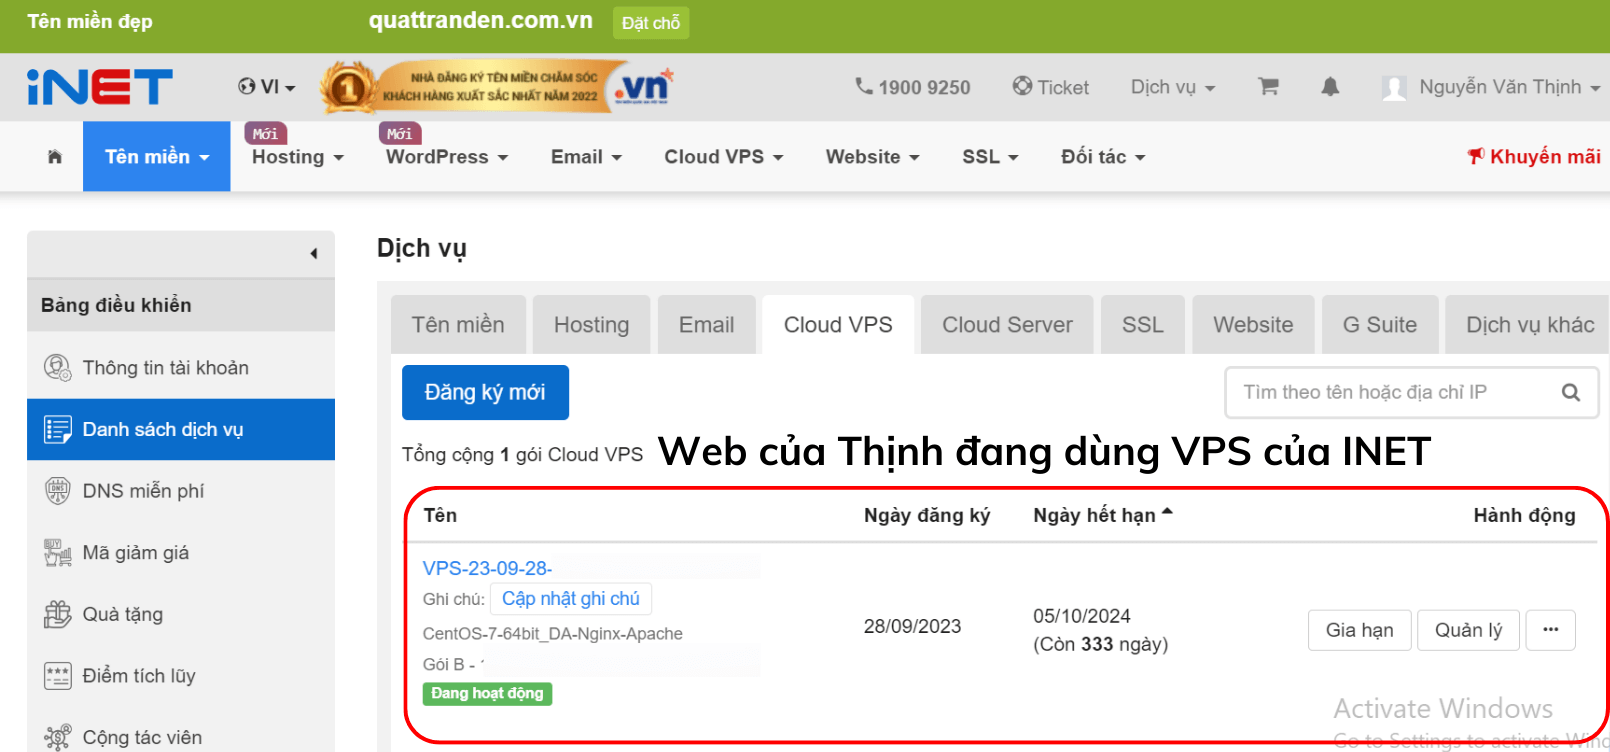 Web cua Thinh dang dung VPS cua INET 1